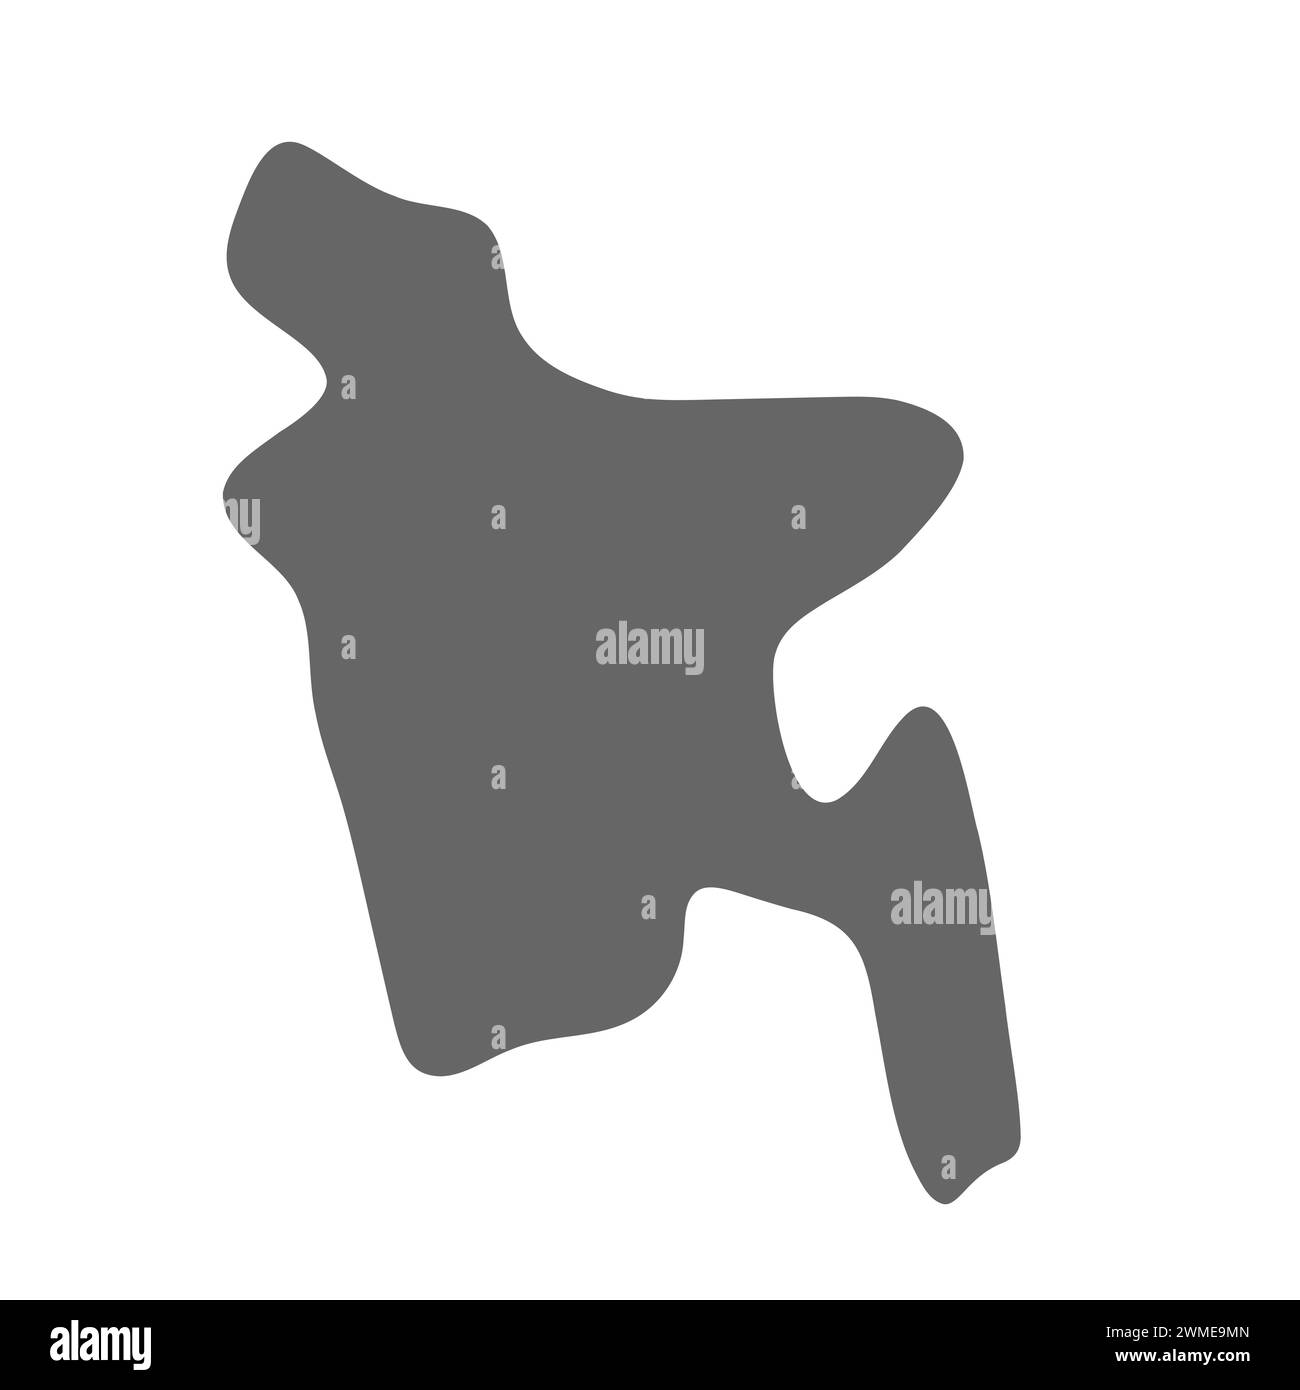 Carte simplifiée du Bangladesh. Carte lisse élégante grise. Icônes vectorielles isolées sur fond blanc. Illustration de Vecteur